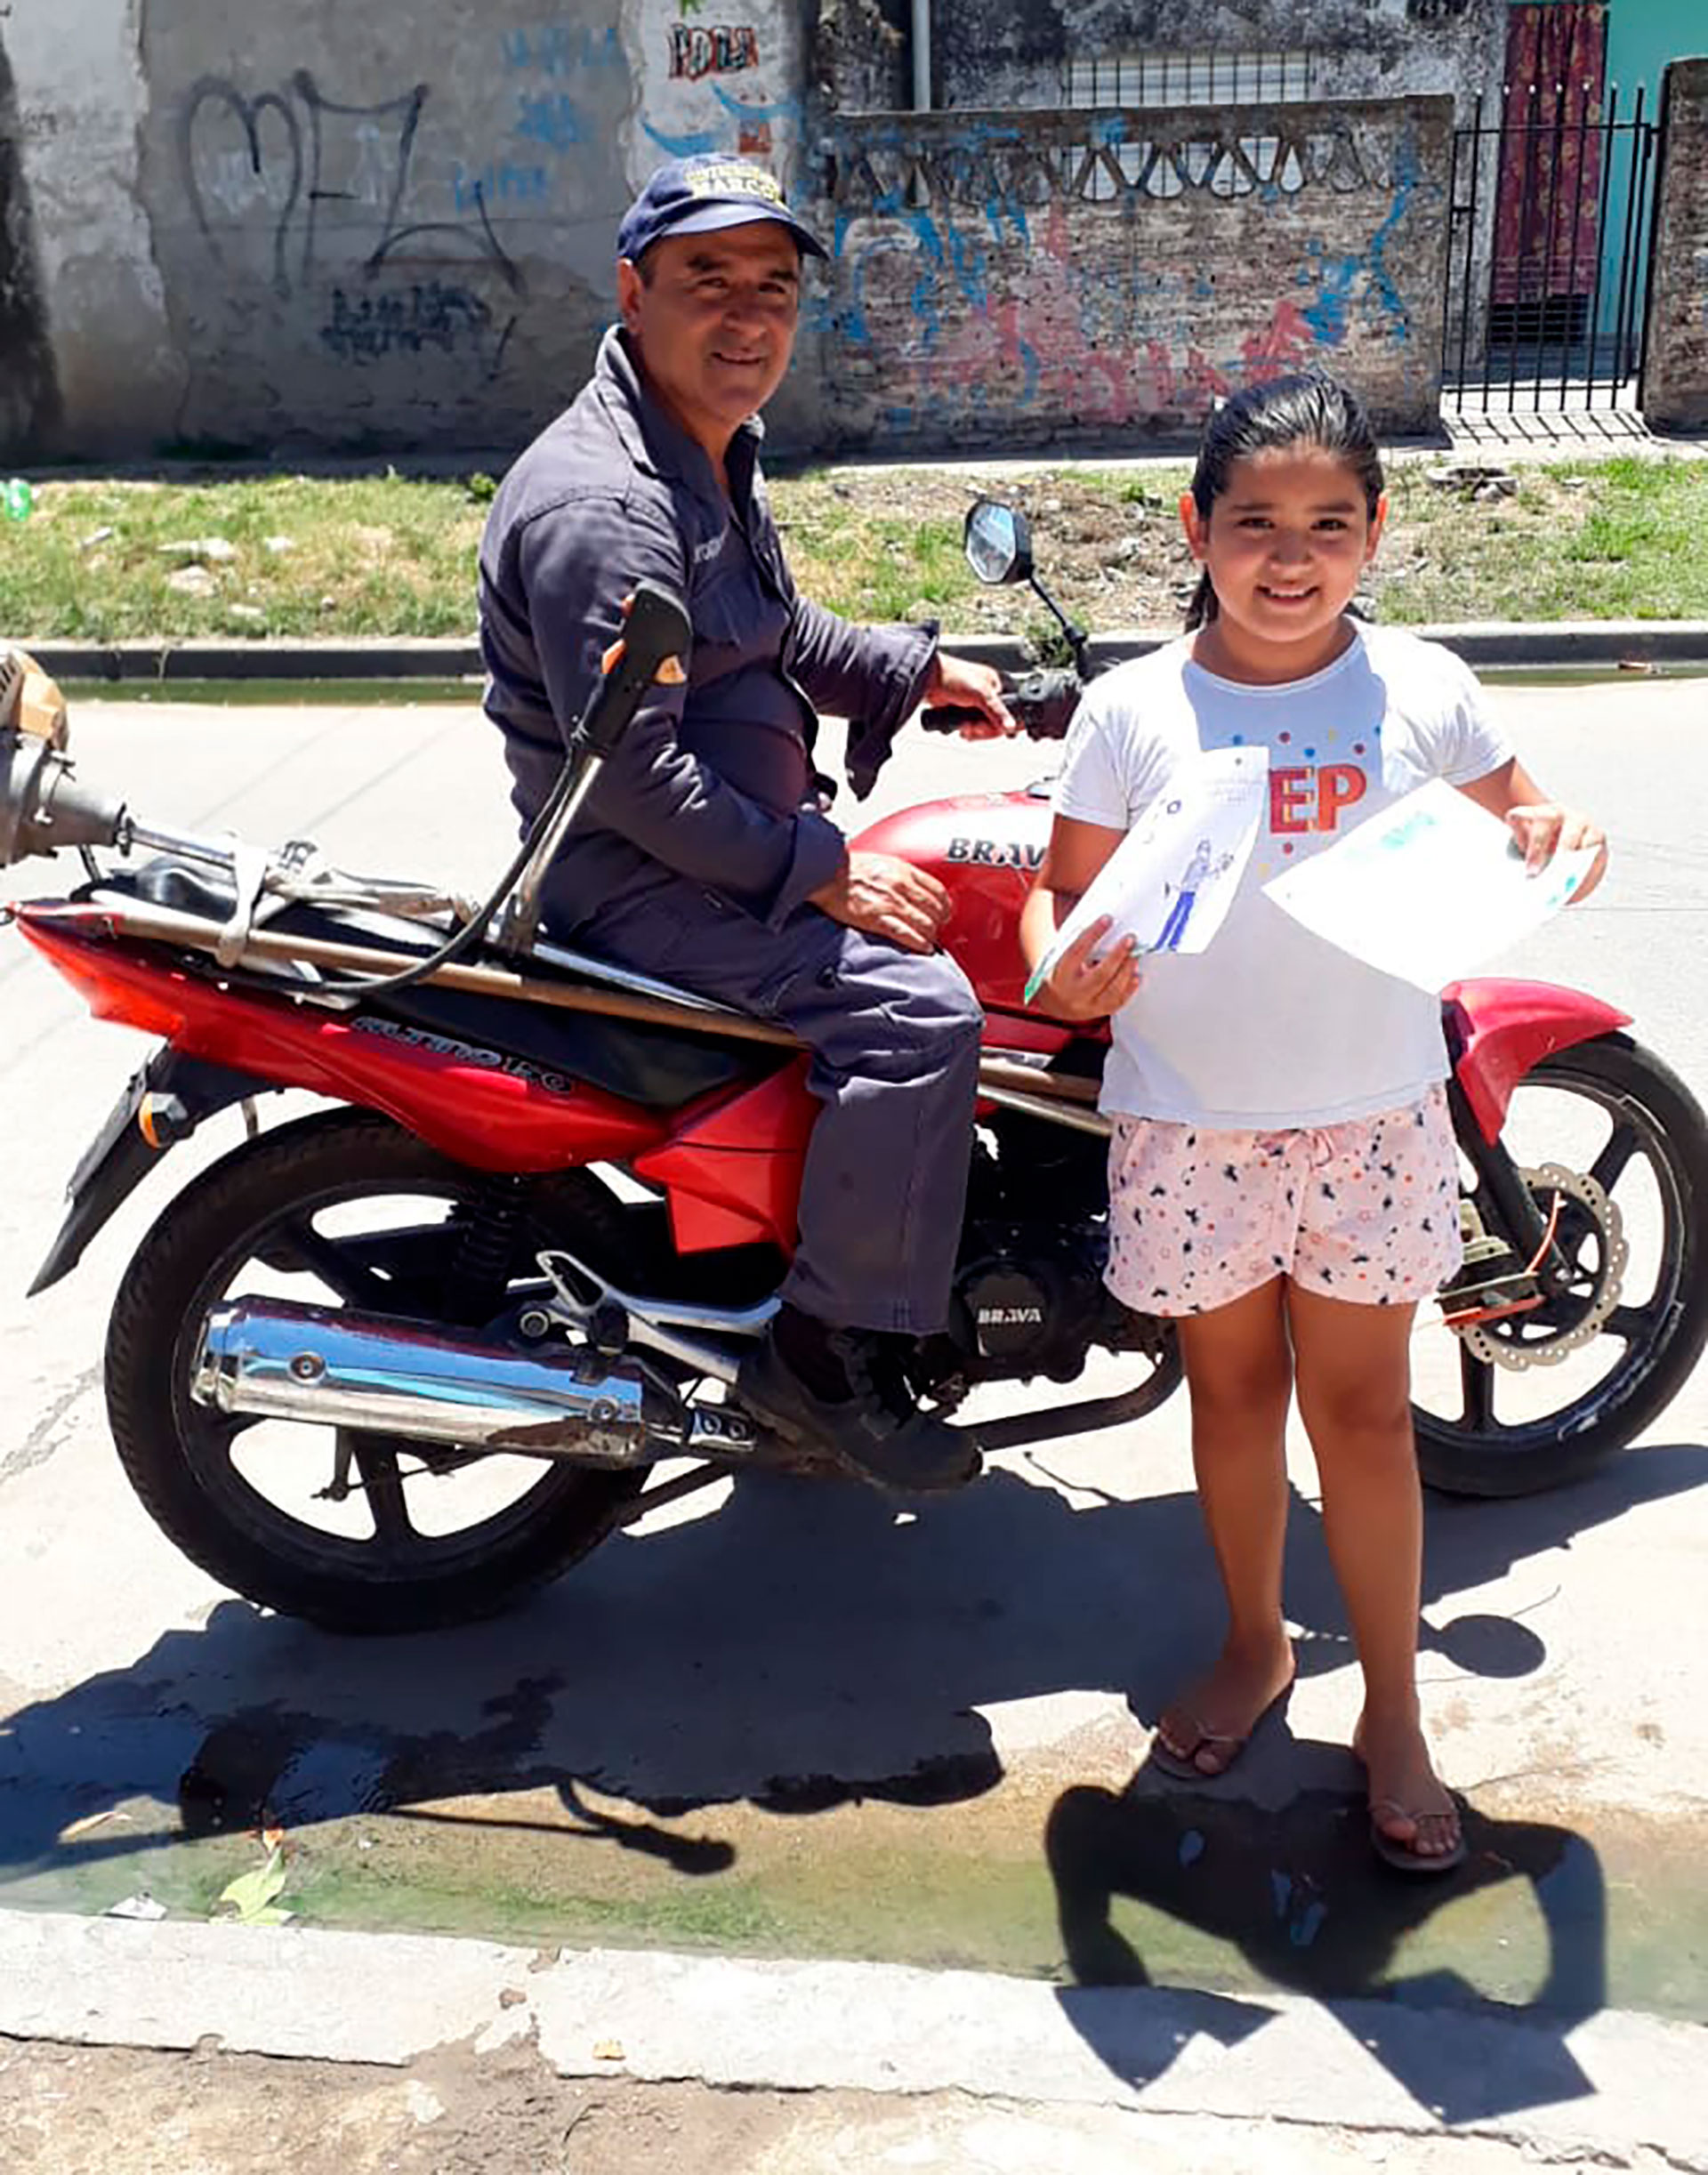 Todos los días, Gustavo sale a cortar pasto en su moto y su hija sale a la calle para despedirlo y desearle "suerte"